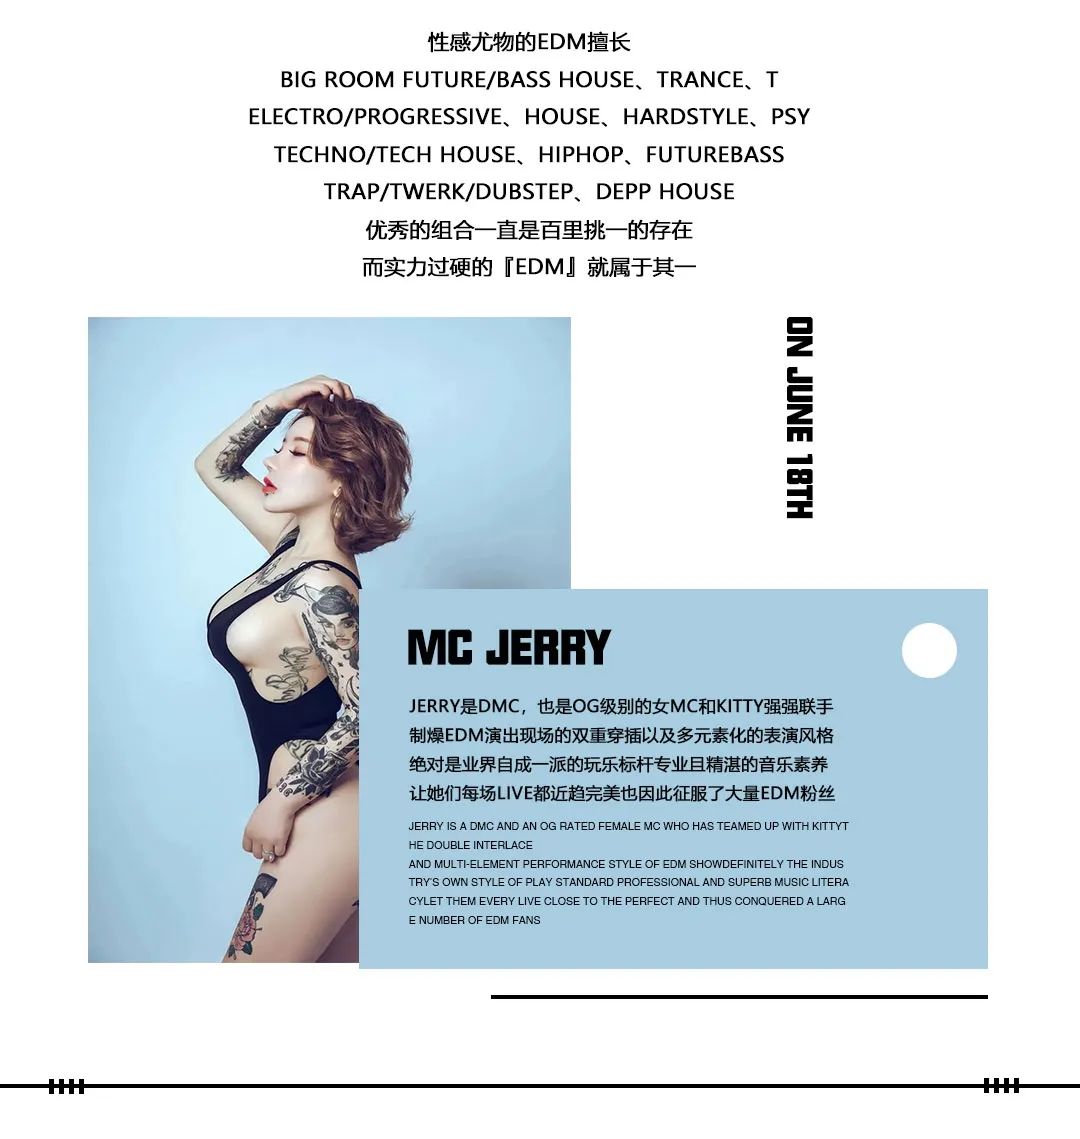 CLUB MAX YANJIAO︱06.18 不凡EDM夜晚 DJ KITTY & MC JERRY 来啦！-廊坊MAX酒吧/CLUB